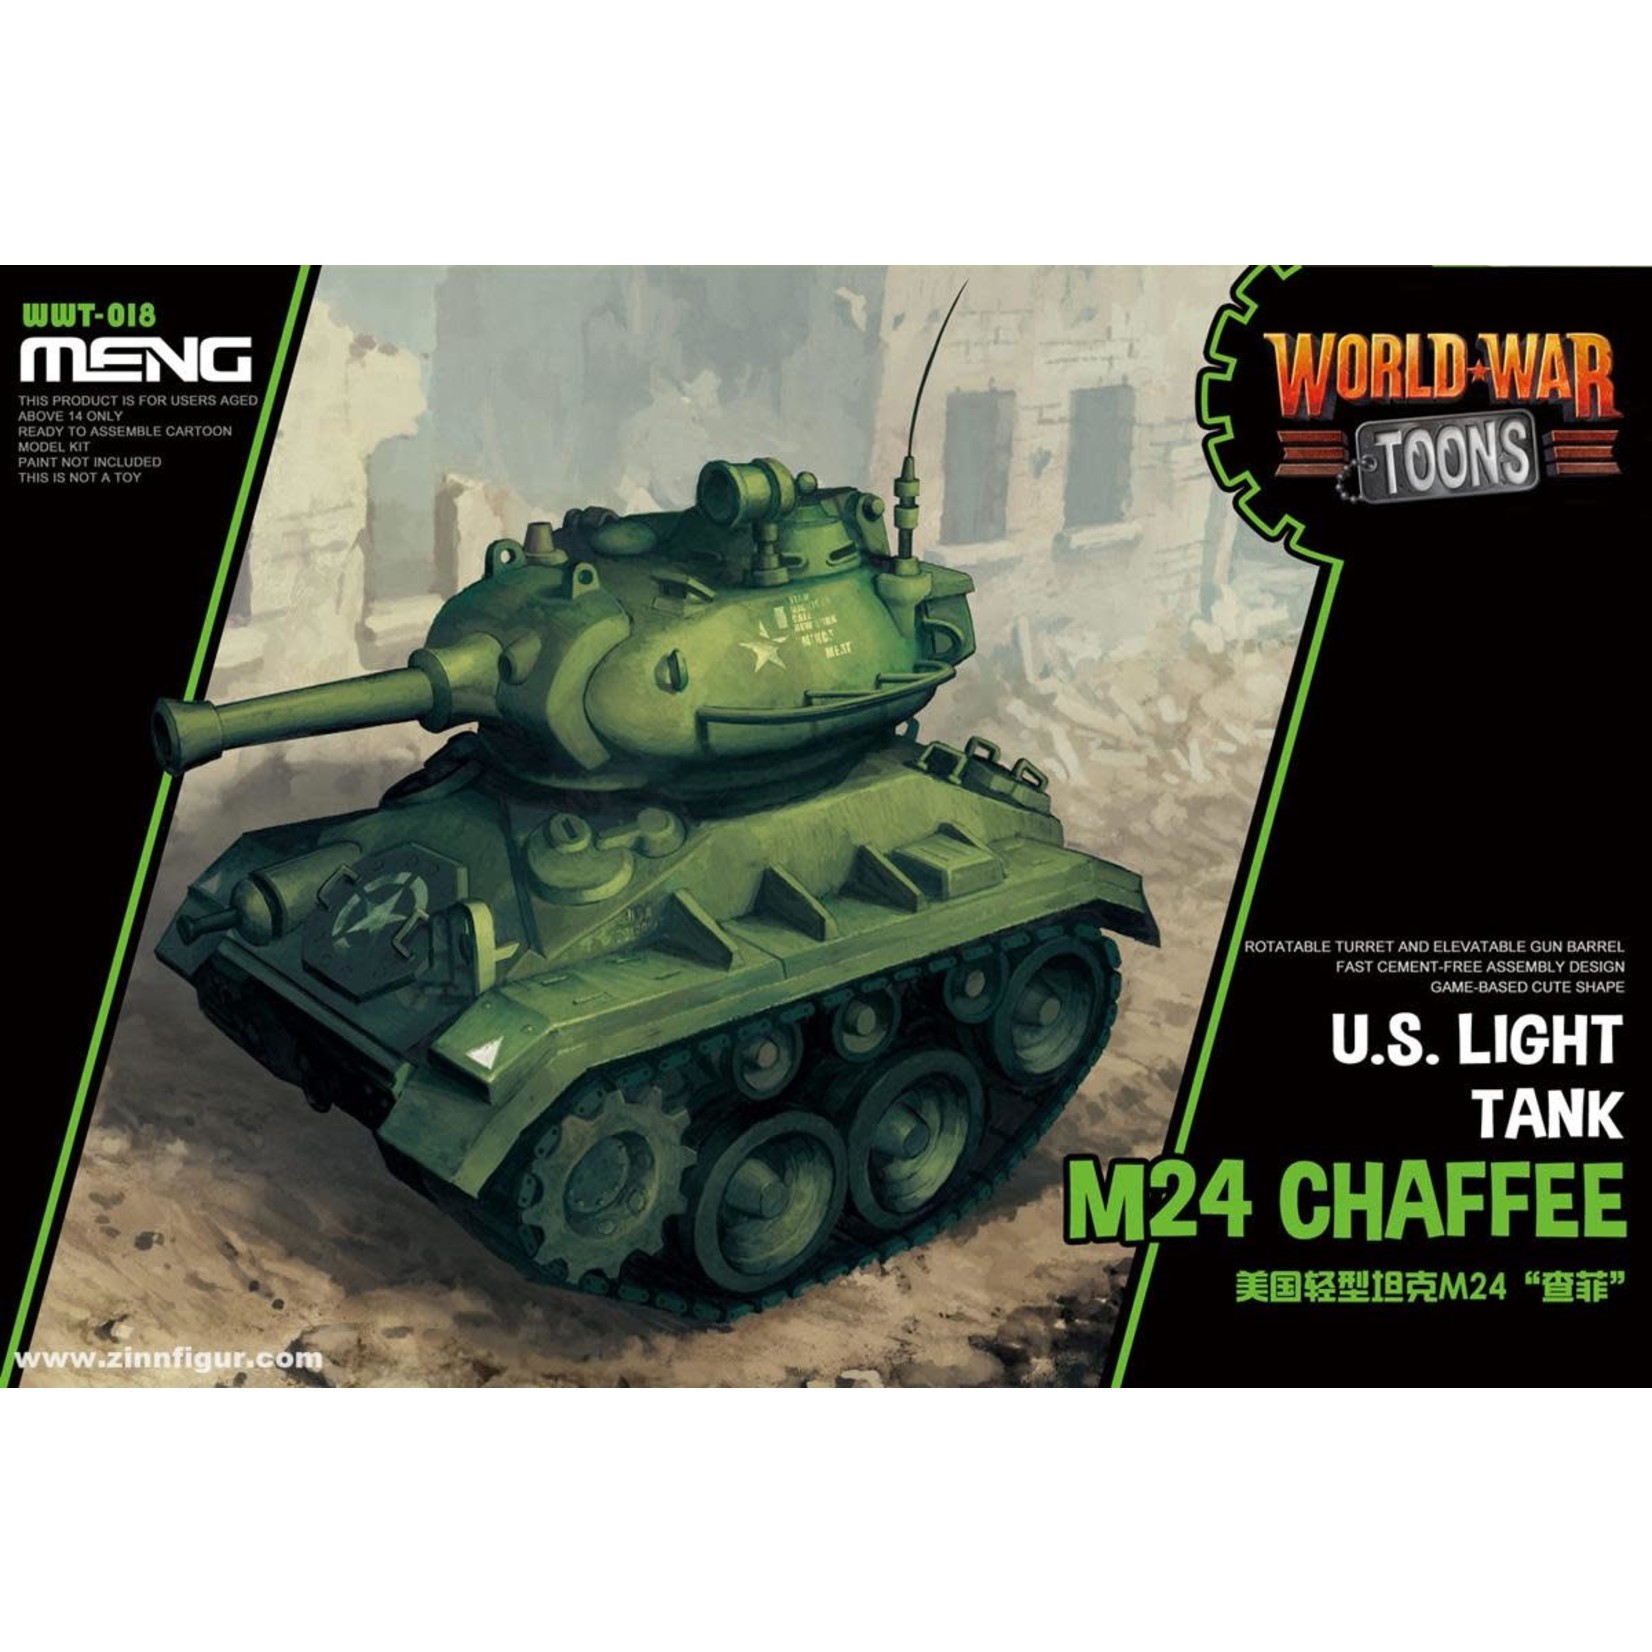 MENG MENGWWT018 US Light Tank M24 Chaffee World War Toons